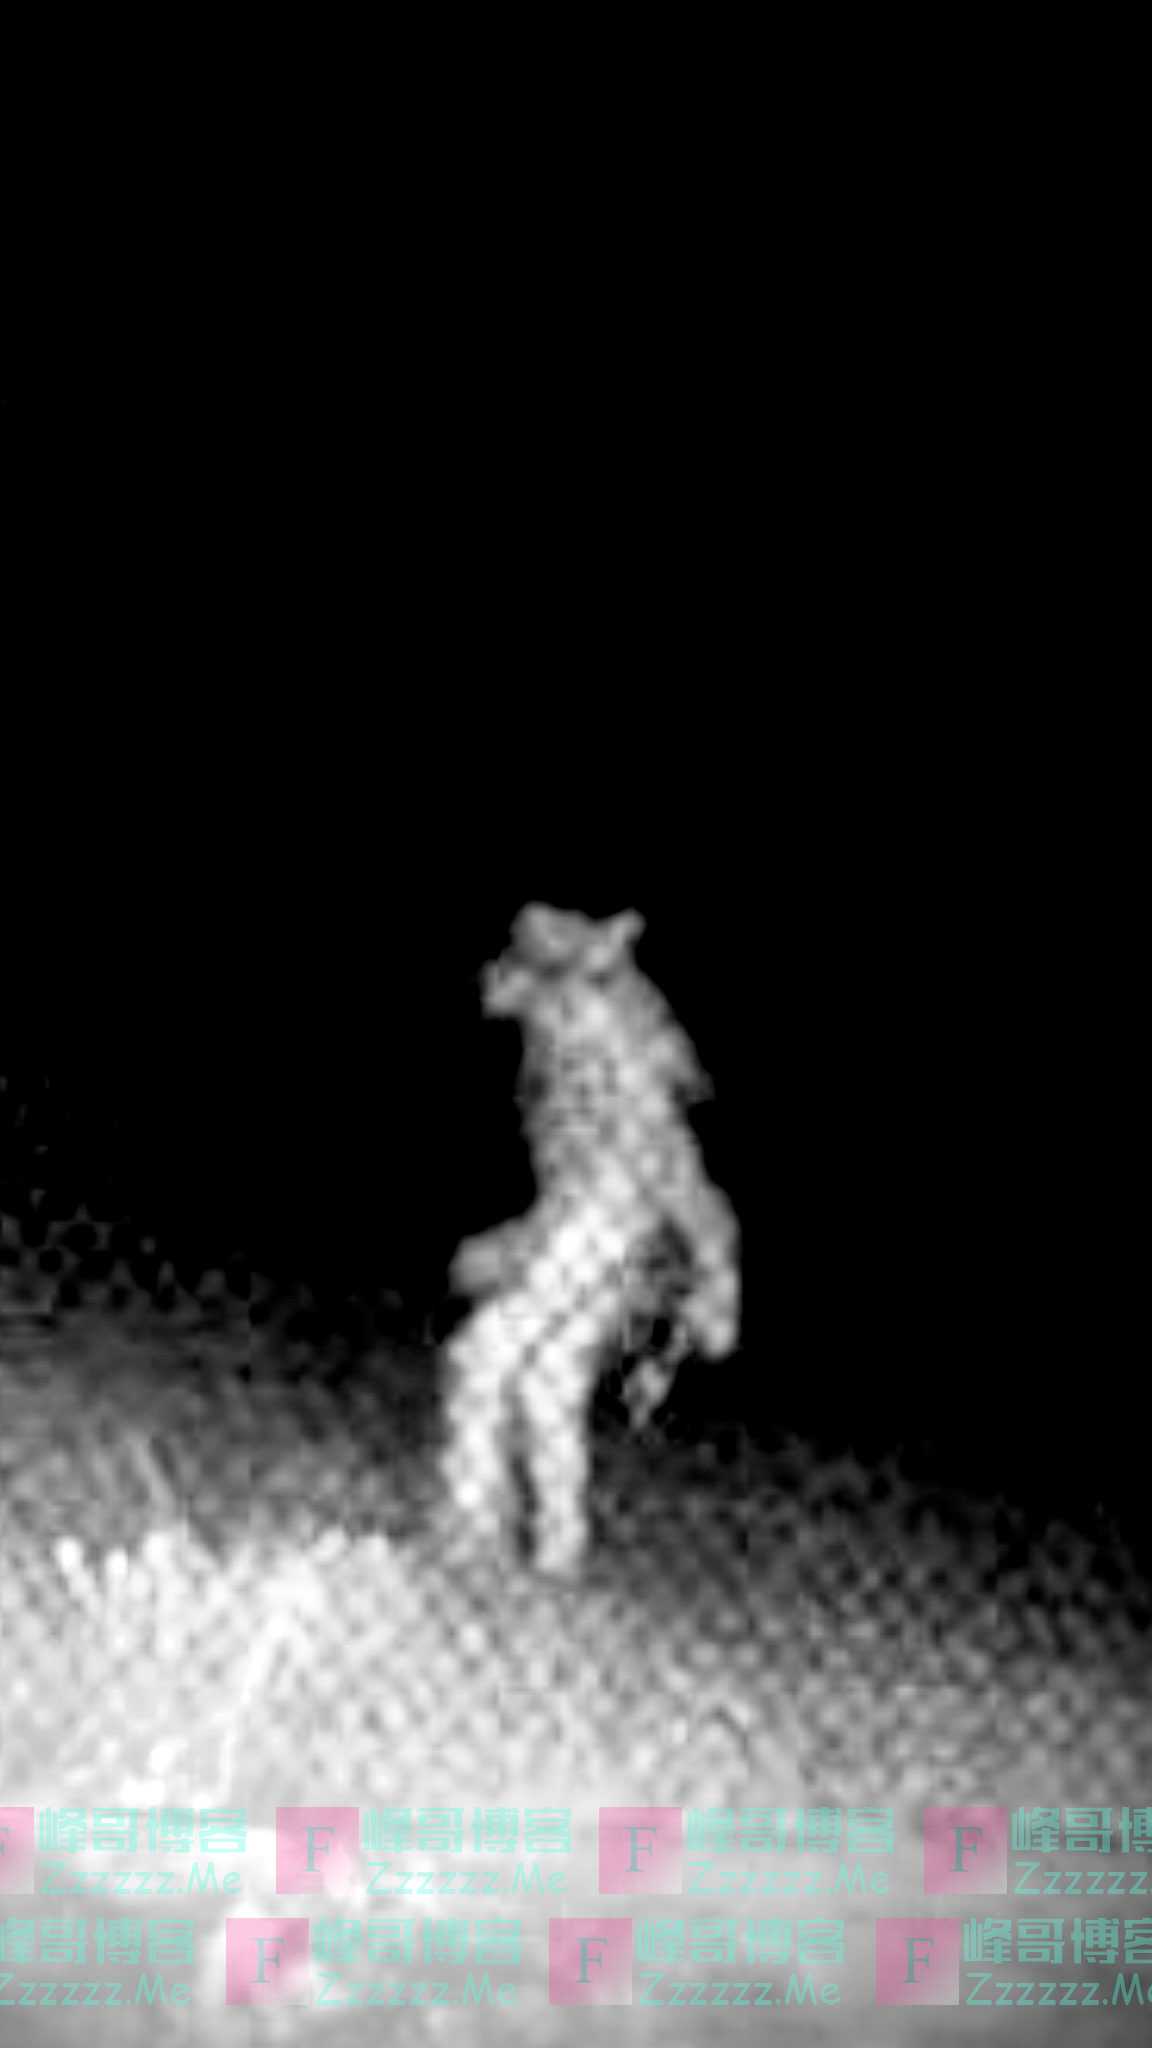 美国一动物园外凌晨有“狼人”走动 政府发照片求线索（图）